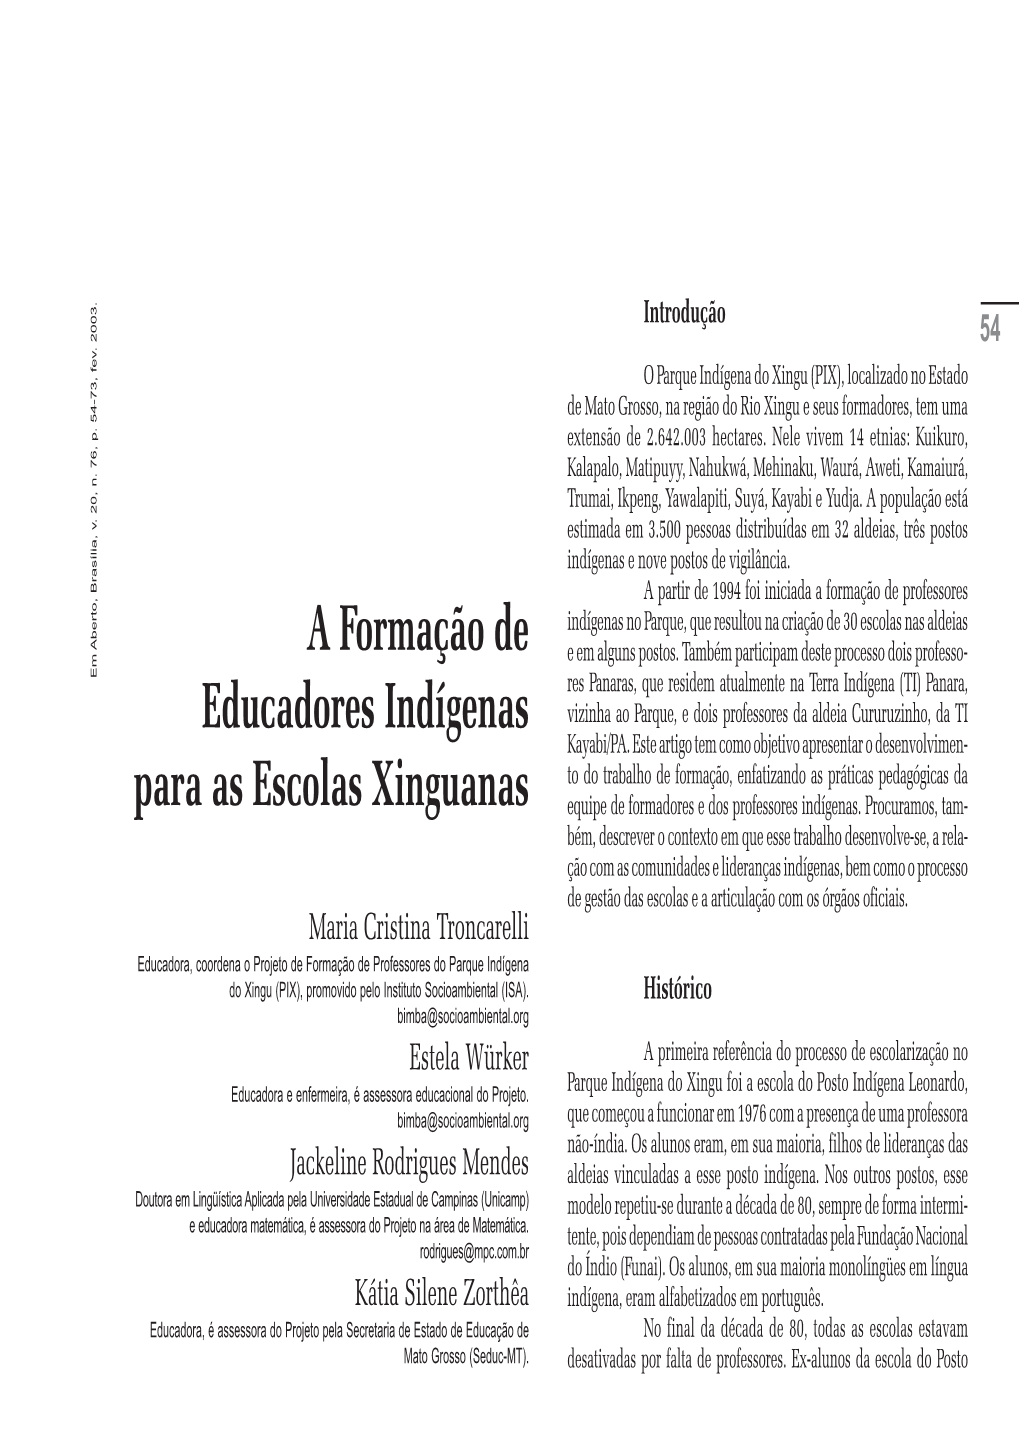 A Formação De Educadores Indígenas Para As Escolas Xinguanas